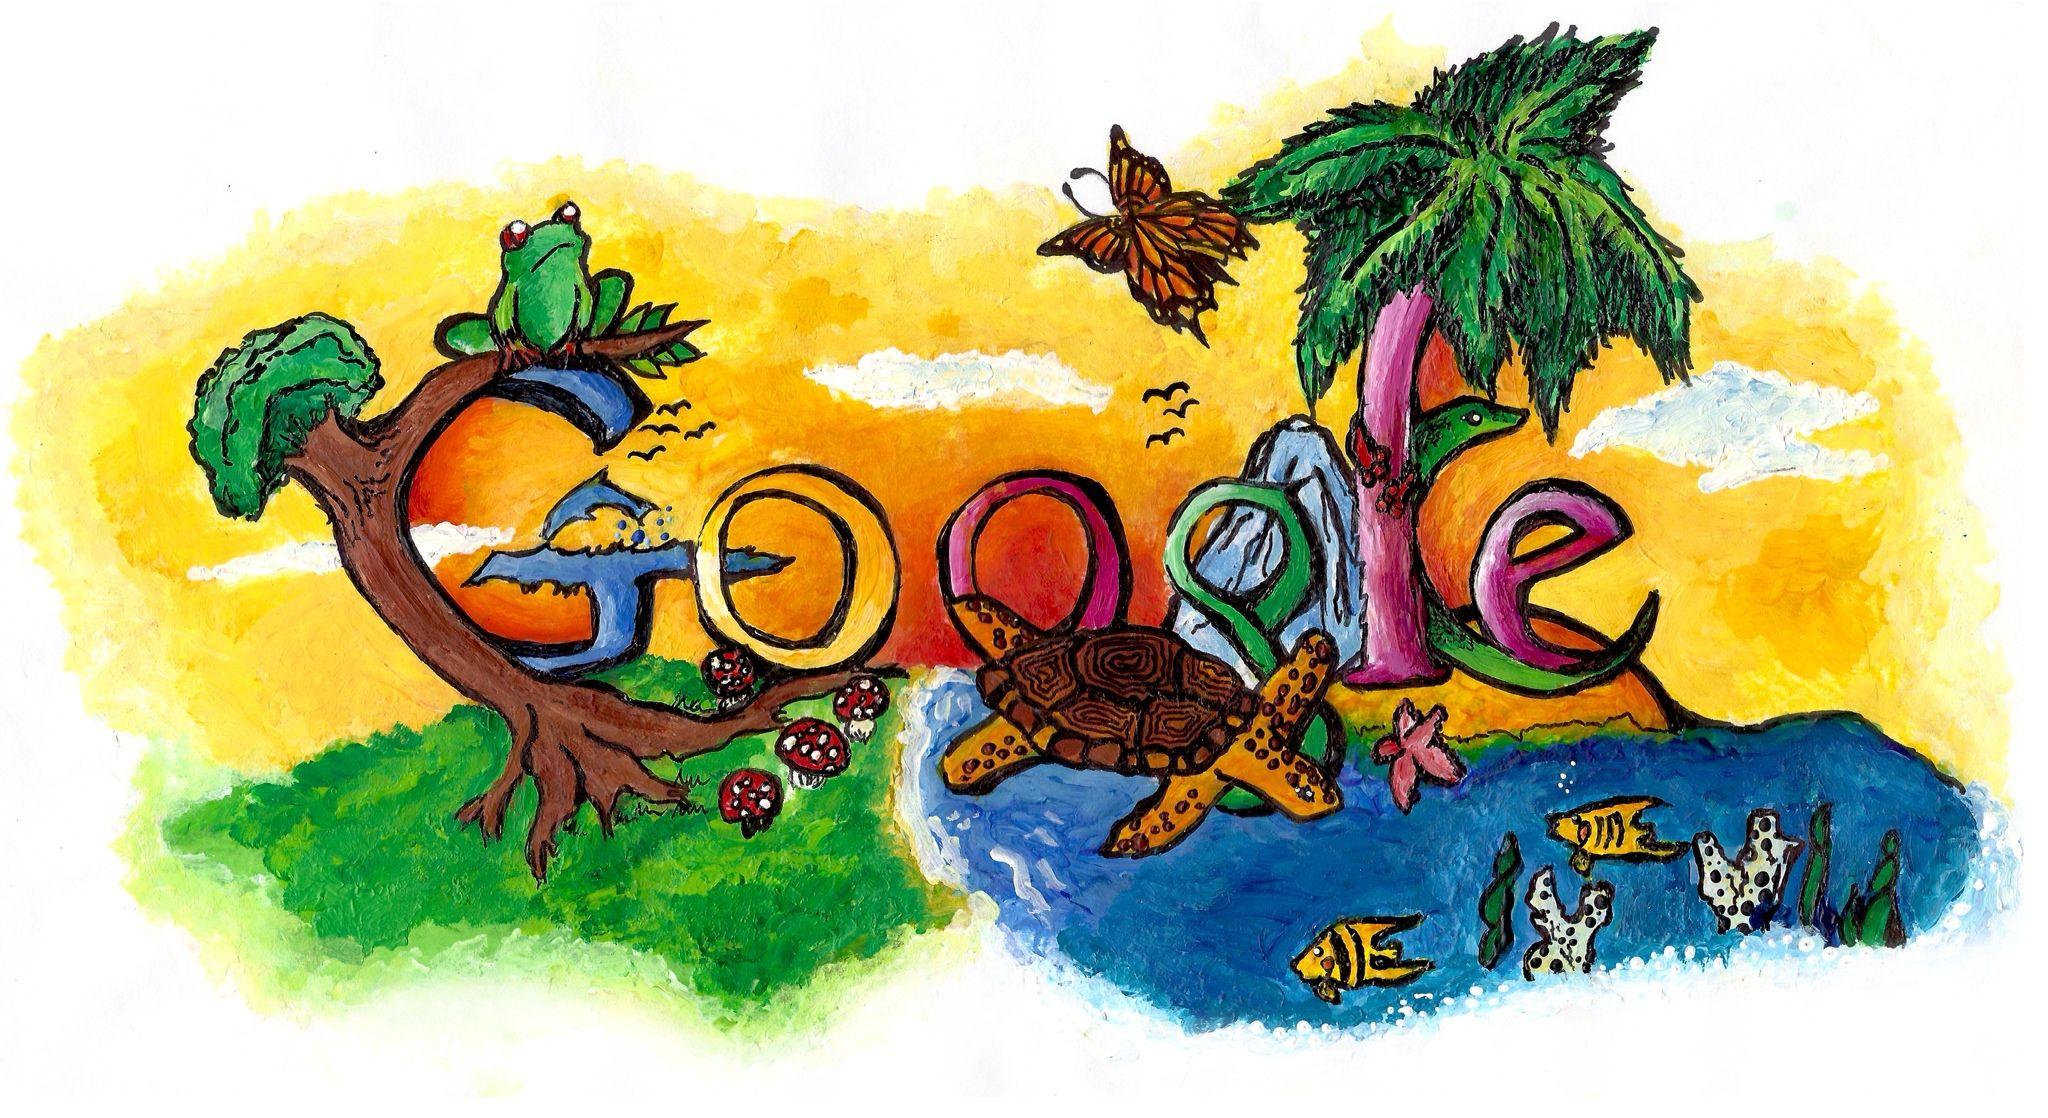 Google Art Logo - Google's Doodle 4 Google Logo Contest: Get Doodling, Kids | TIME.com